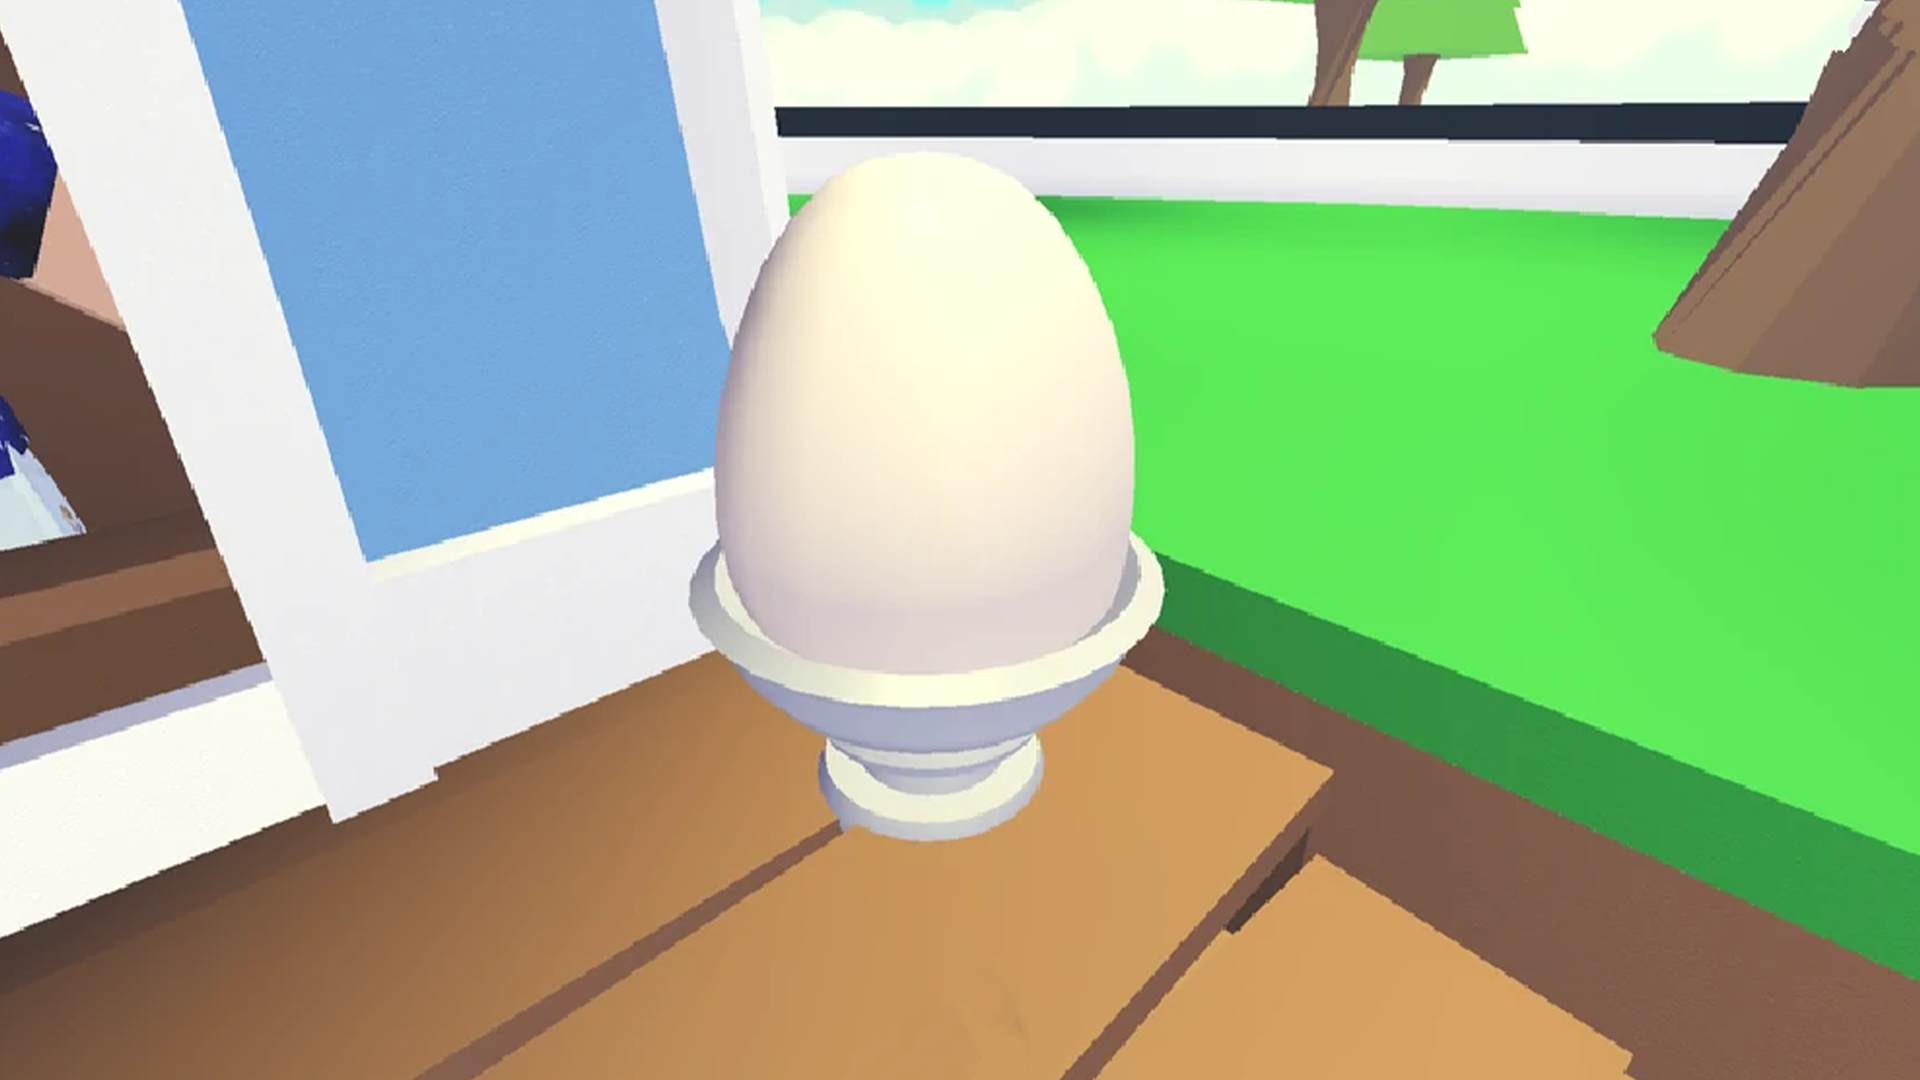 Сильное яйцо роблокс. Яйца из РОБЛОКСА адопт ми. Яйцо РОБЛОКС. Яйцо из роблакса Адобми. В РОБЛОКСЕ яйца в adopt me.